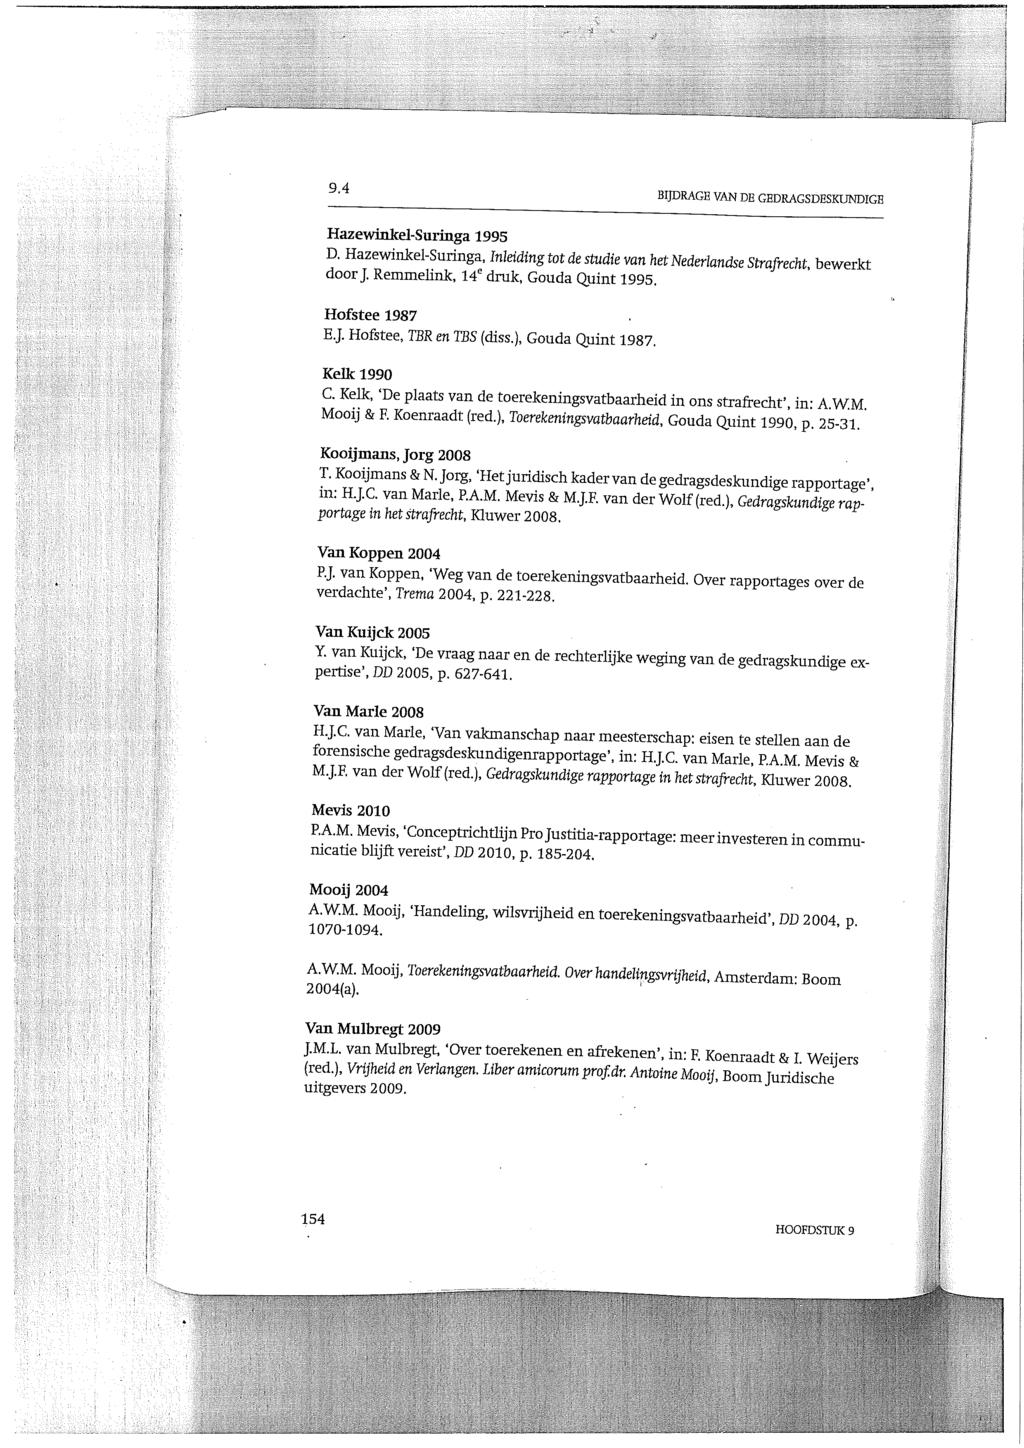 9 4 BIJDRAGE VAN DE GEDRAGSDESKUNDIGE Hazewinkel-Suringa 1995 D. Hazewinkel-Suringa, Inleiding tot de studie van het Nederlandse Strafrecht, bewerkt door J. Remmelink, 14 e druk, Gouda Quint 1995.